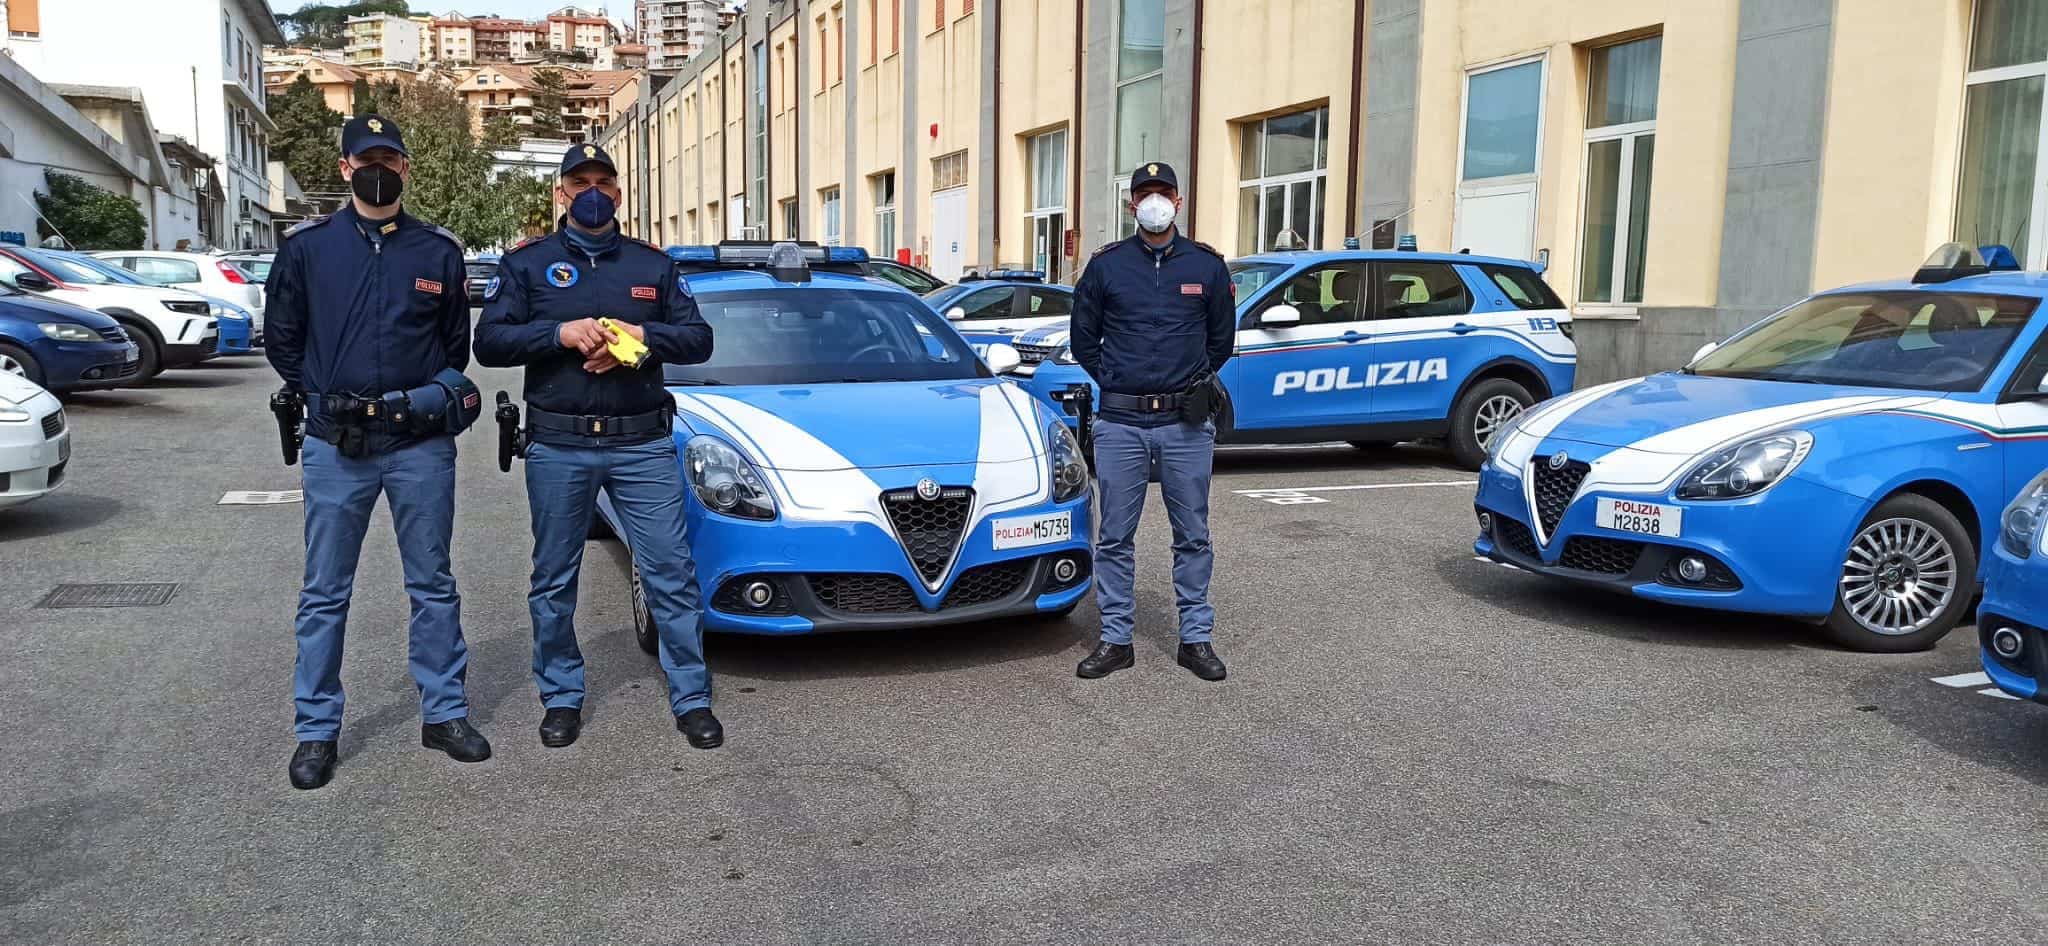 Anche a Messina arriva il Taser, i poliziotti avranno un’altra arma per combattere la criminalità